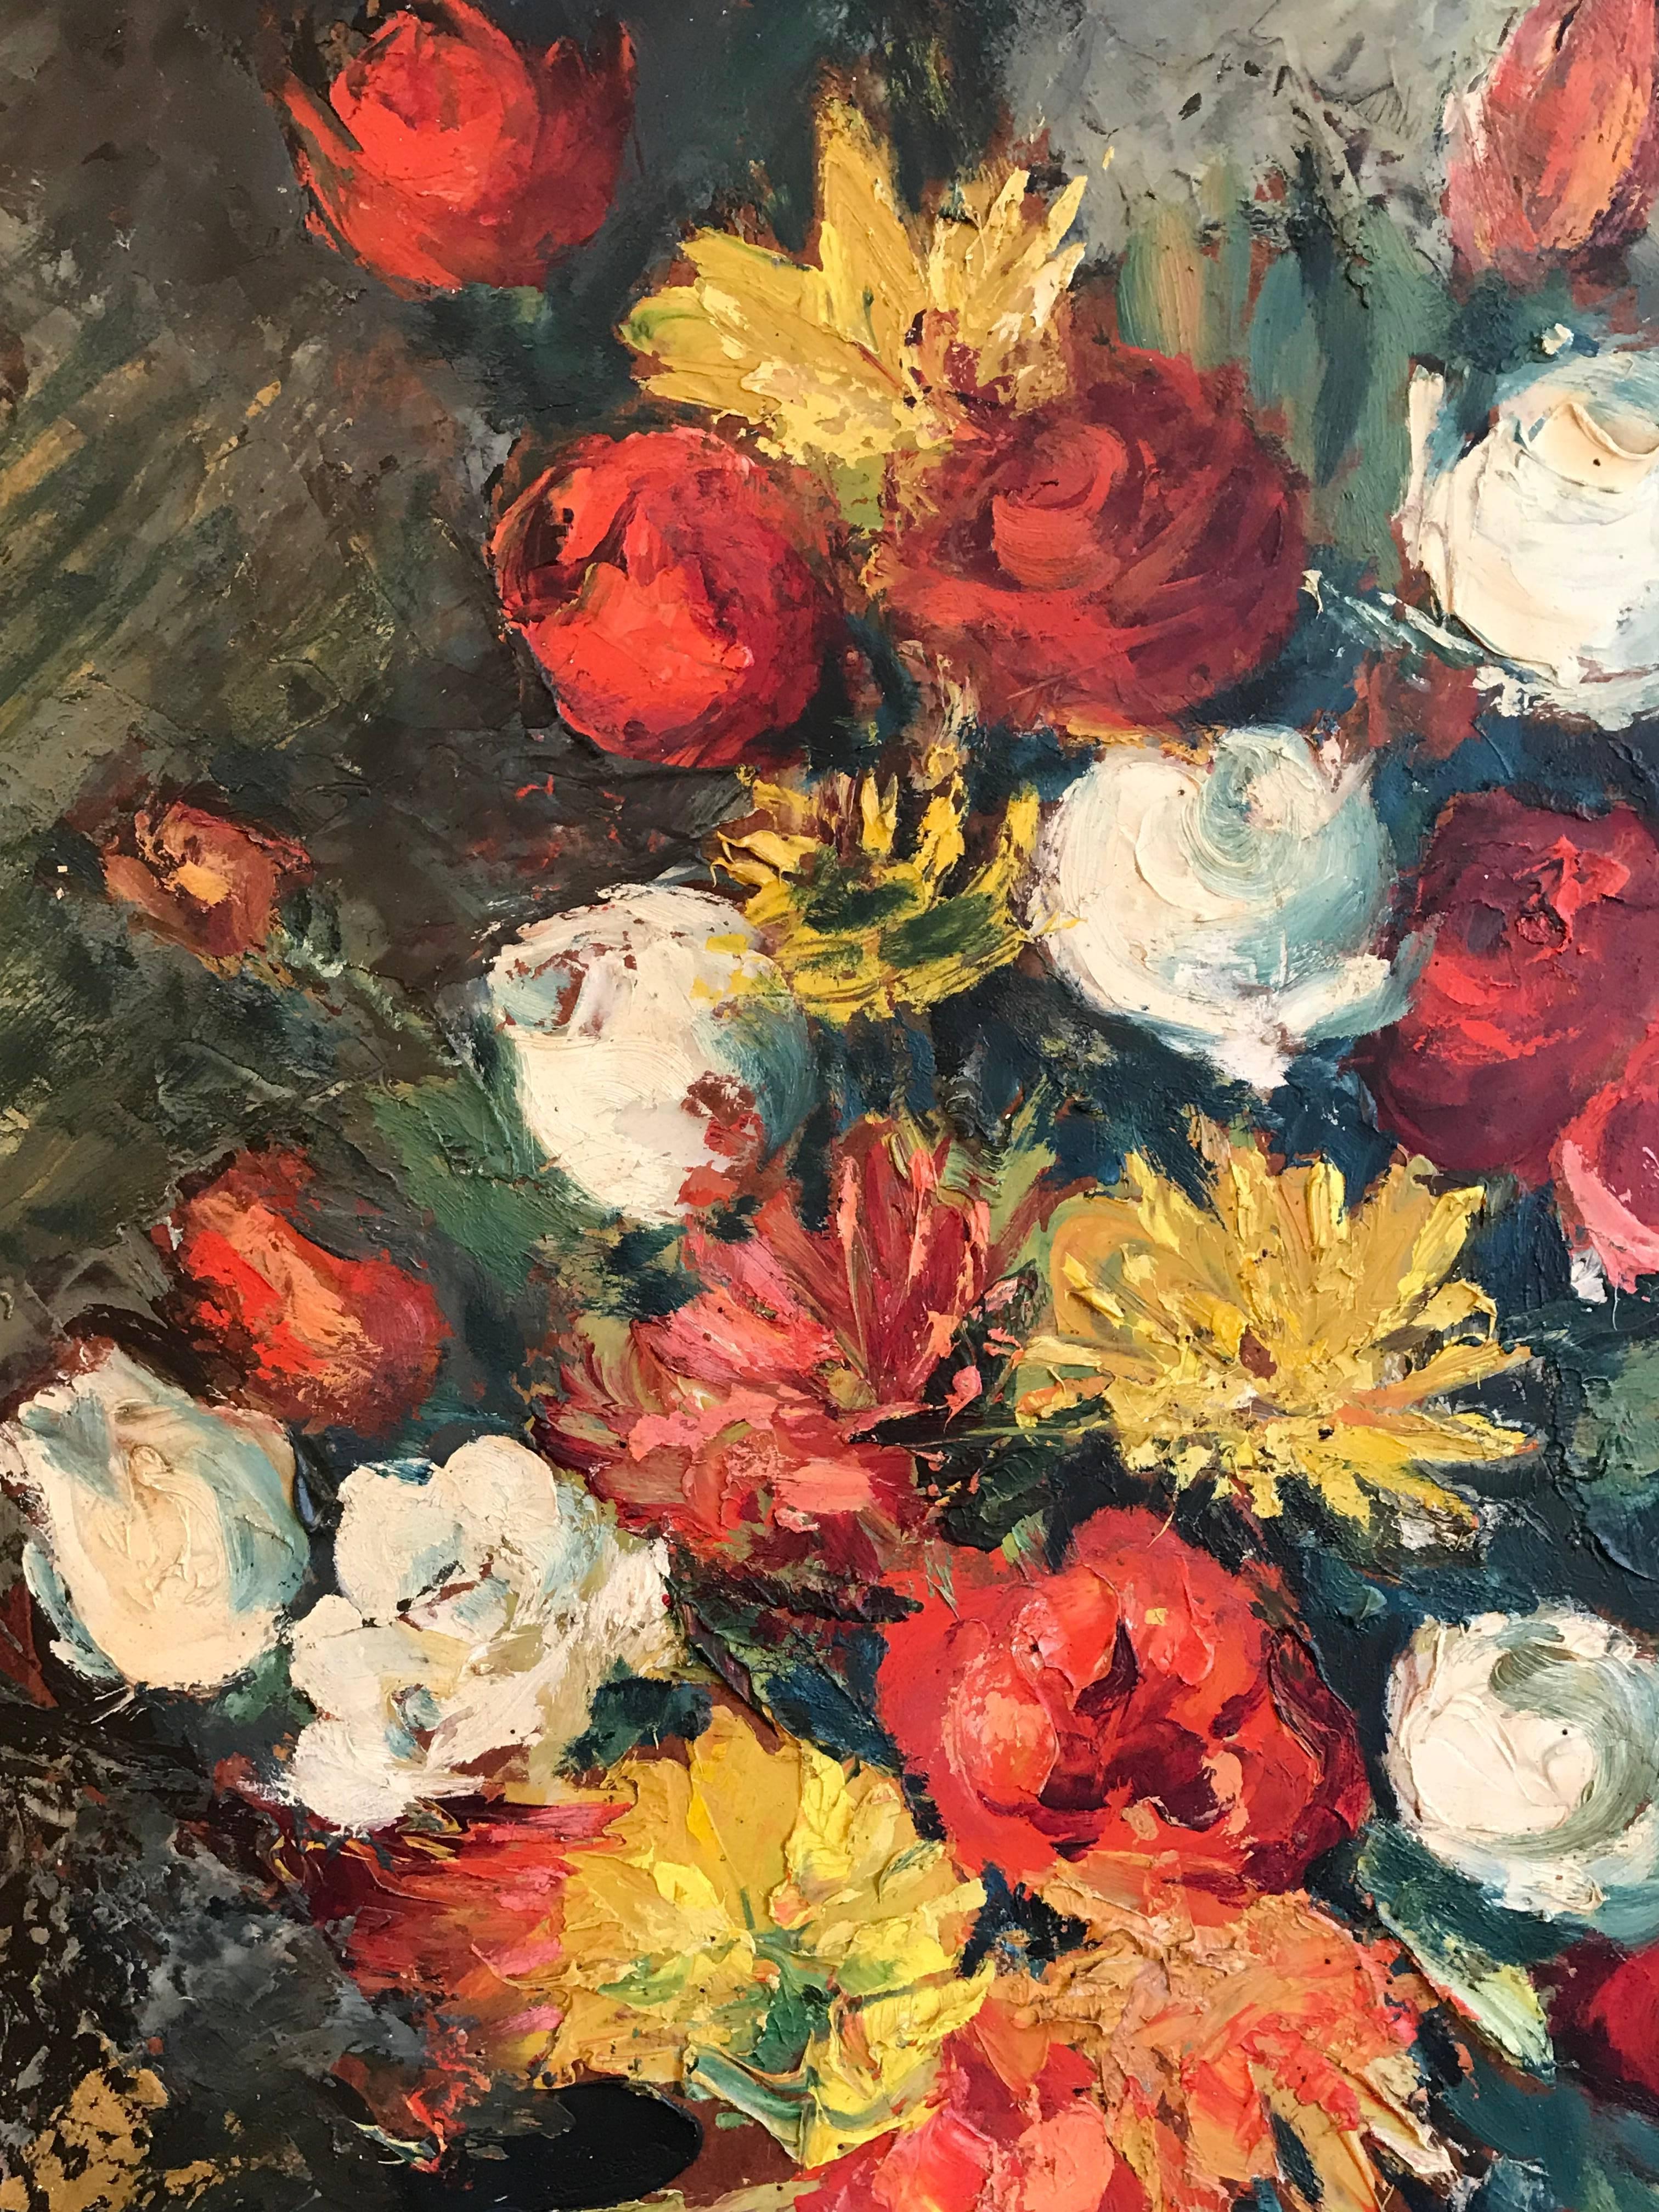 Sommer Bouquet
von MAURICE VAGH WEINMANN (Ungar, 1899-1986) 
signiert unten rechts
ölgemälde auf Karton, gerahmt

gerahmte Größe: 30 x 24 Zoll
herkunft: Privatsammlung, Südfrankreich

Hervorragende, kräftige und lebendige Farben, die in diesem